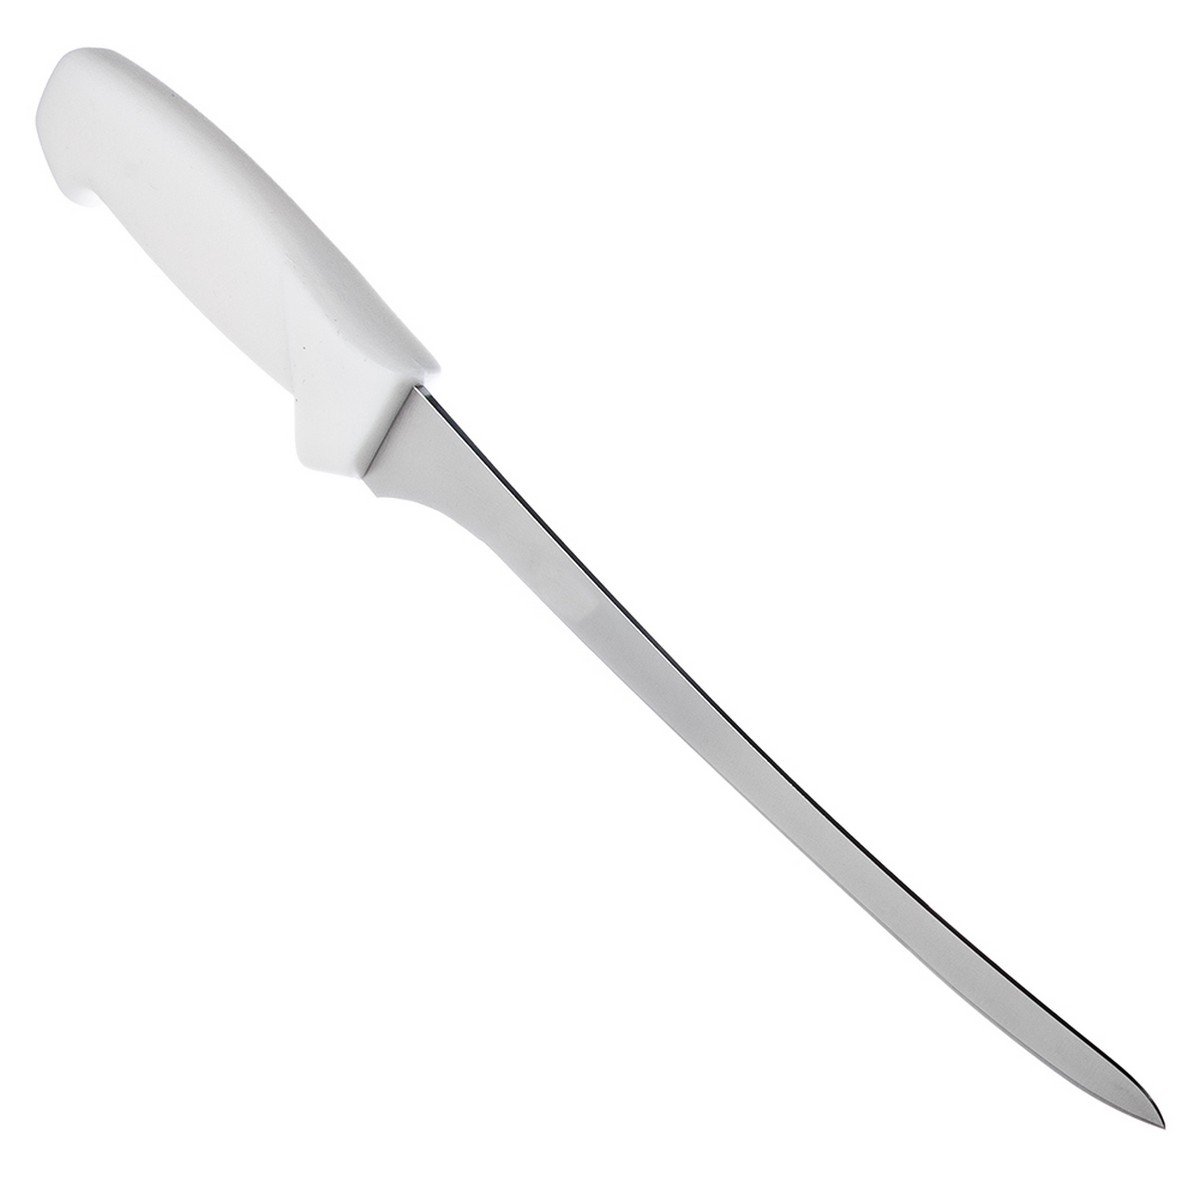 Нож филейный 20 см Professional Master Tramontina 24622/088 - купить в Москве, цены на Мегамаркет | 600005877217